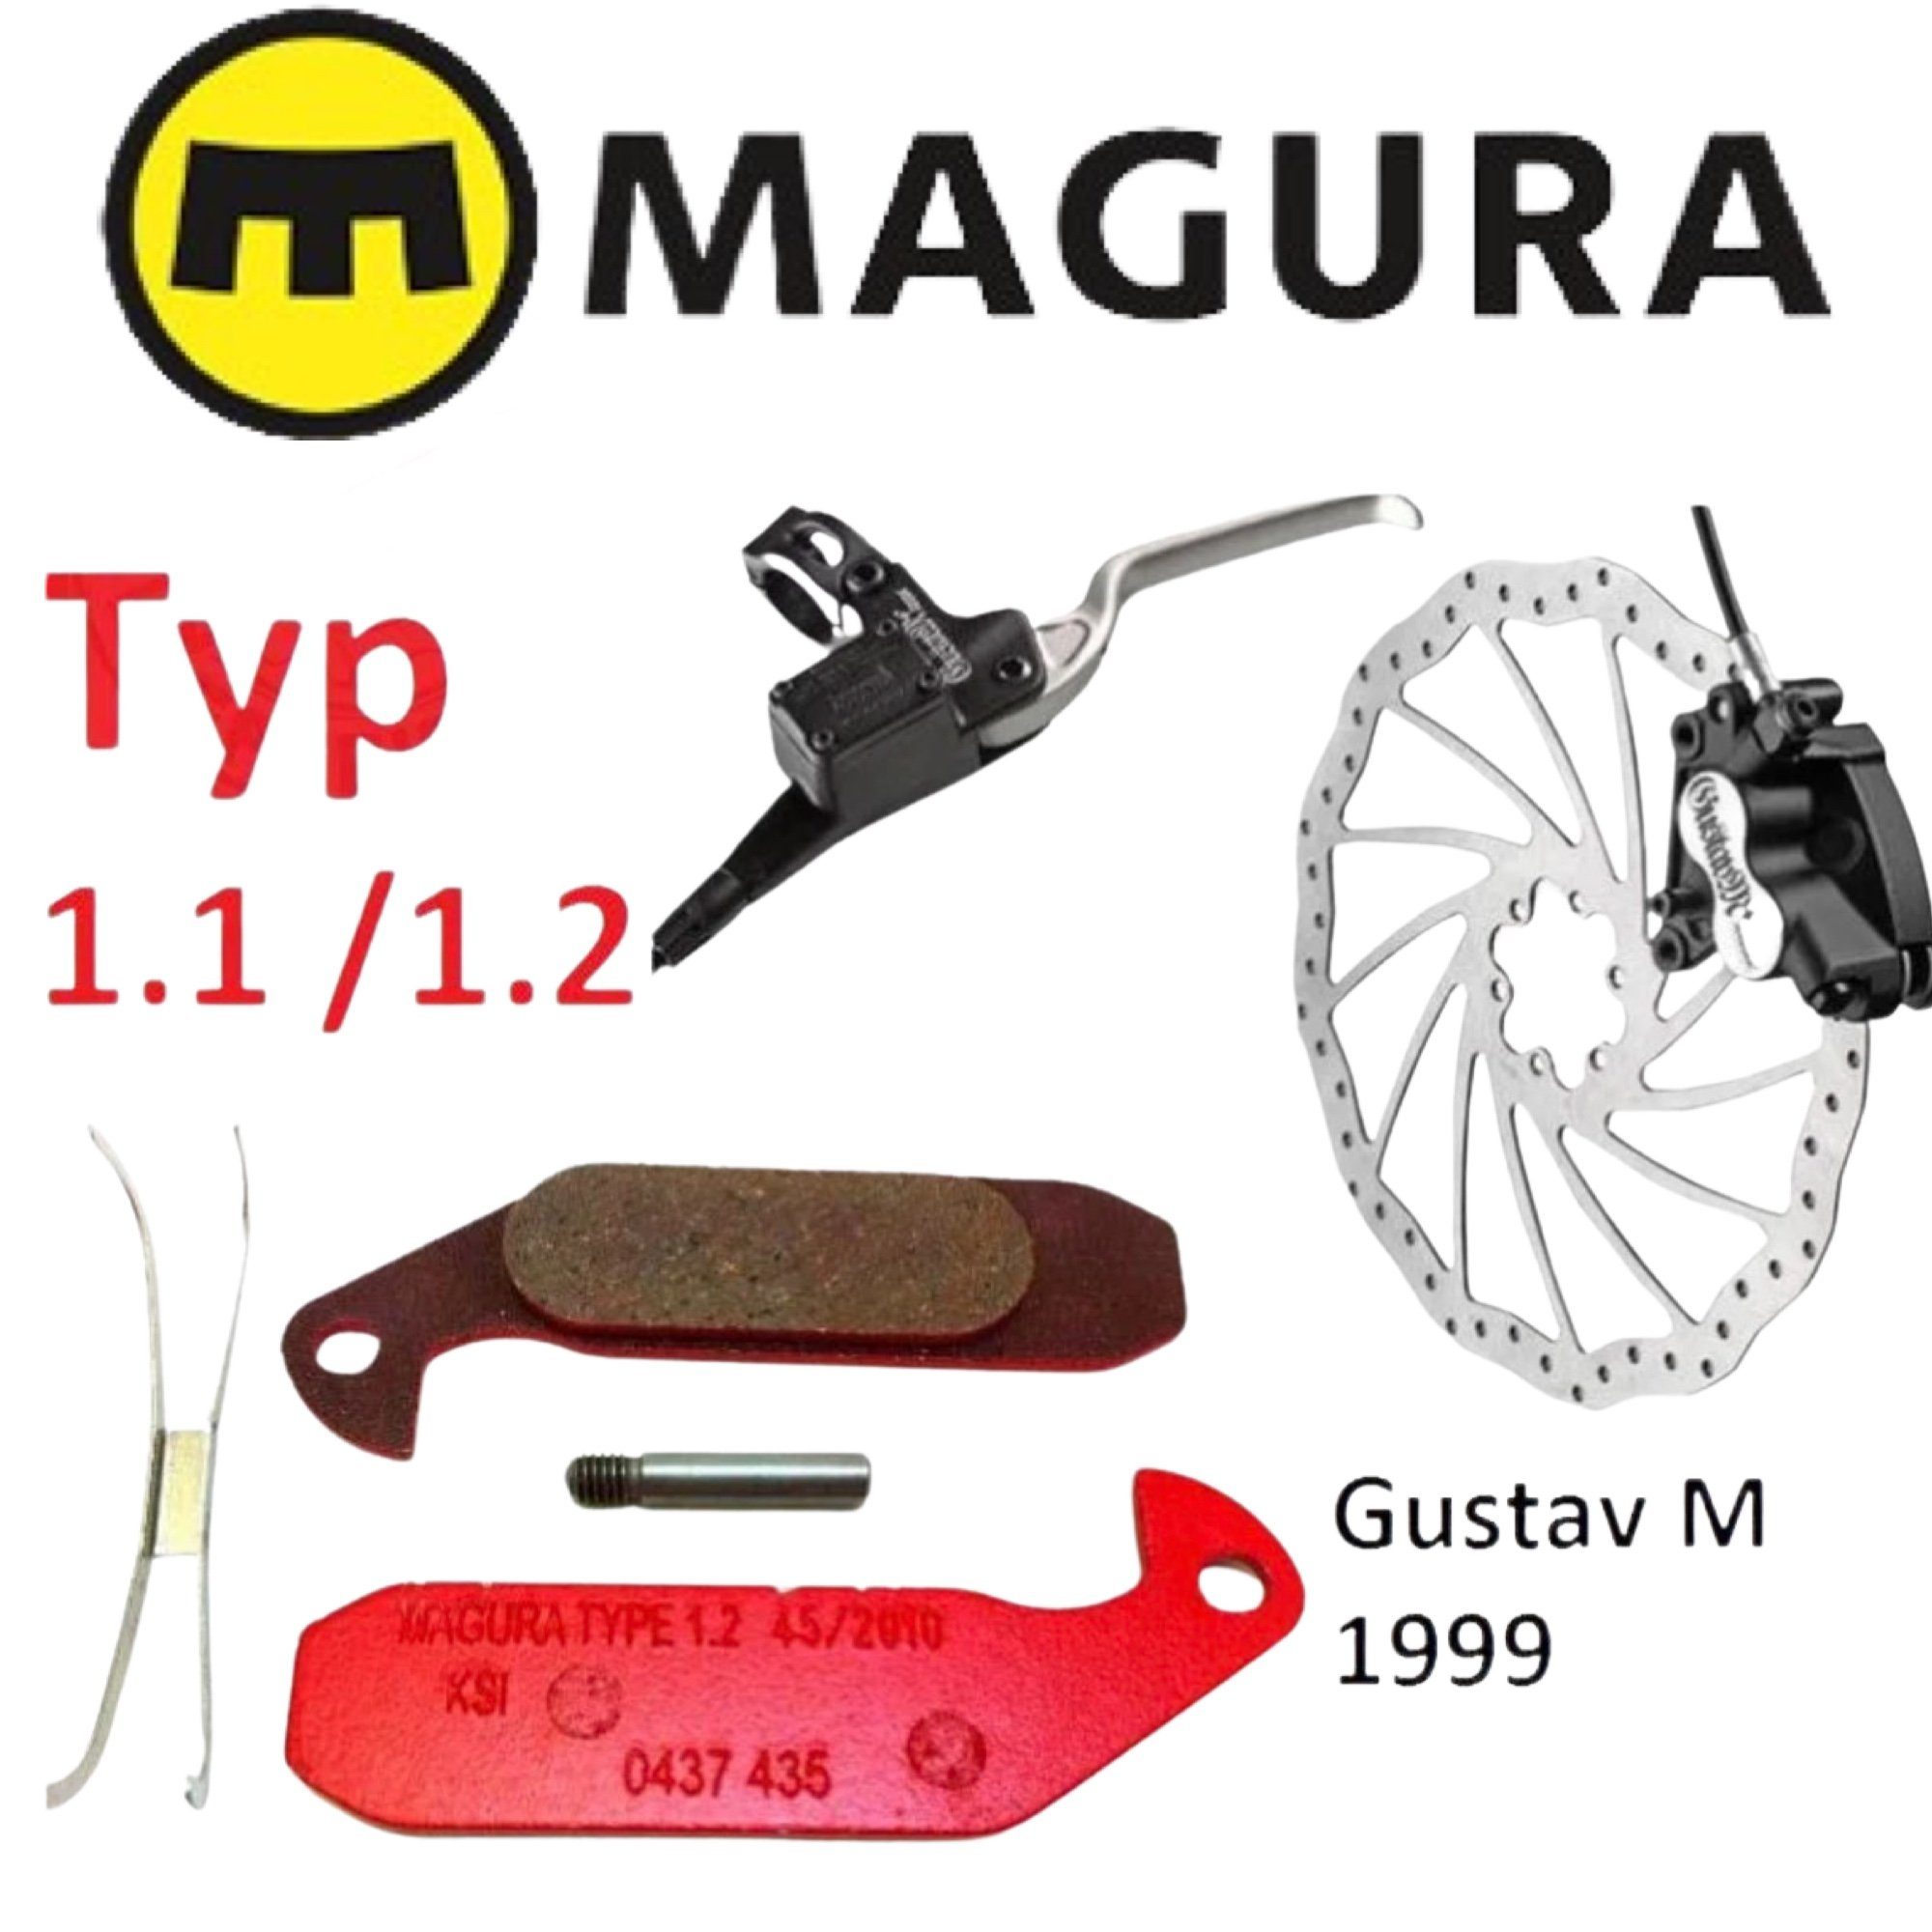 Original MAGURA Bremsbeläge 1.2 Endurance für Gustav M kaufen bei